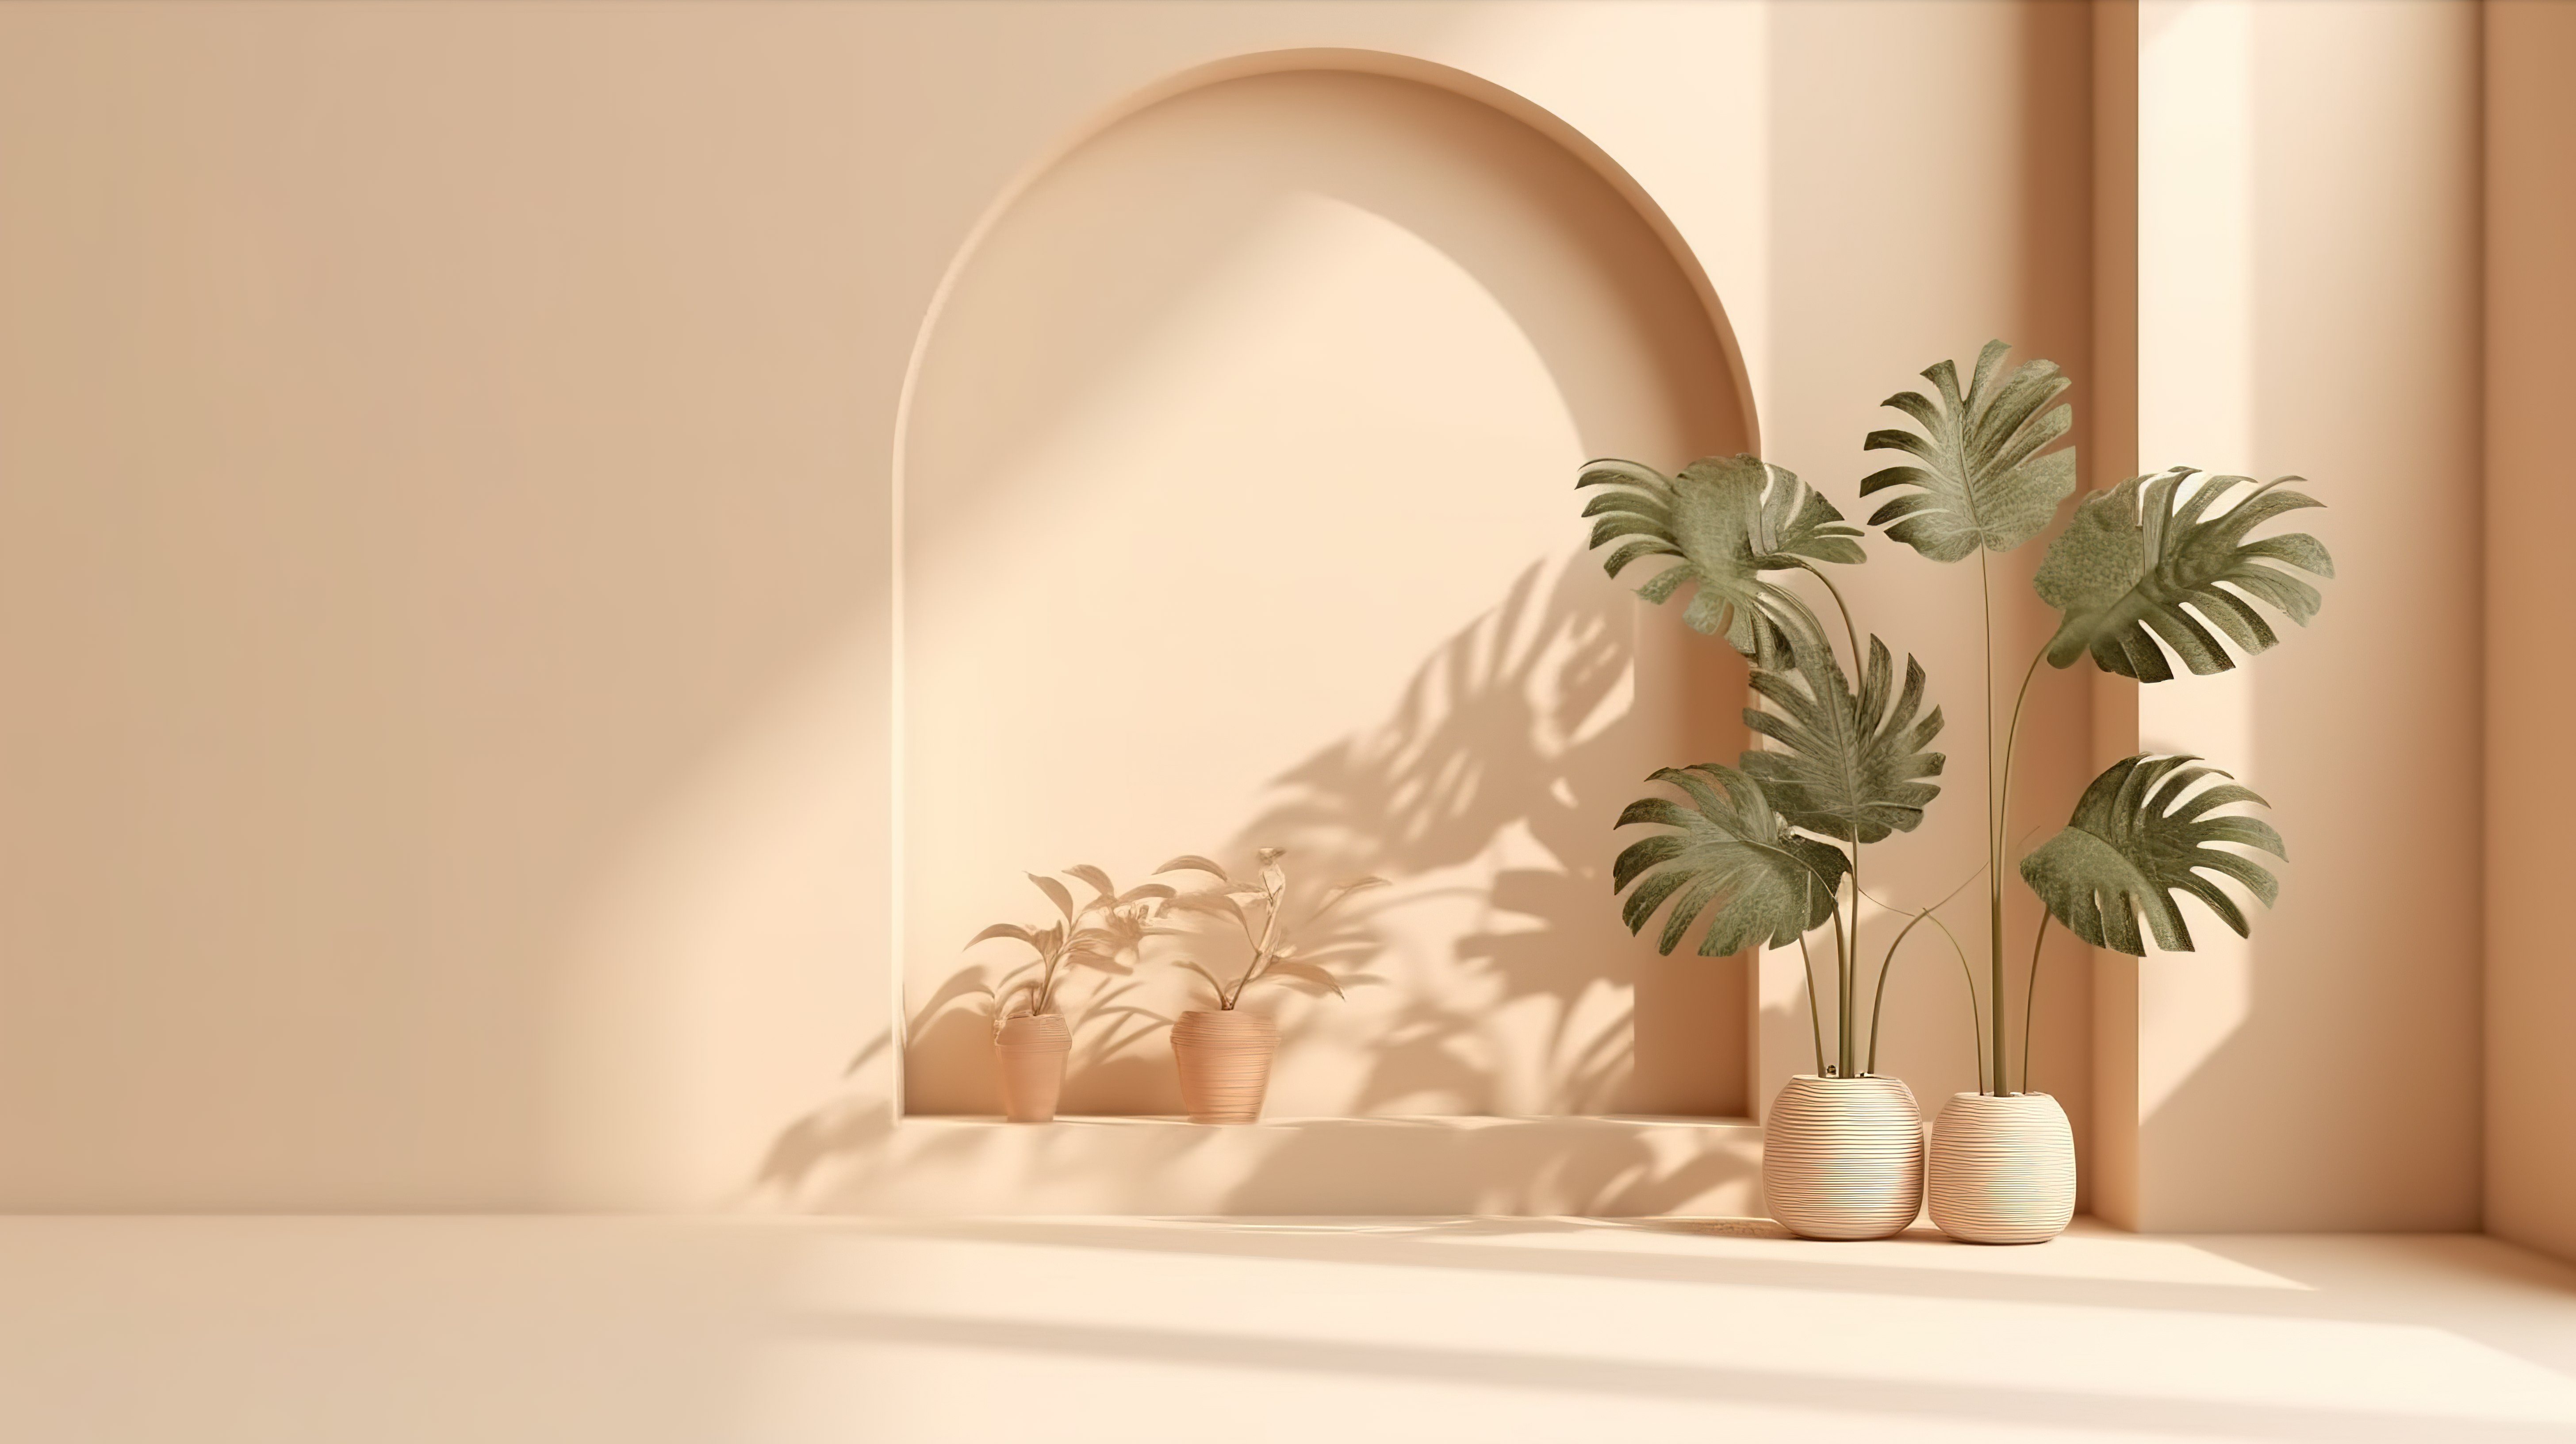 时尚简单的 3D 矢量背景，用于显示带有窗影和植物的米色柔和产品图片